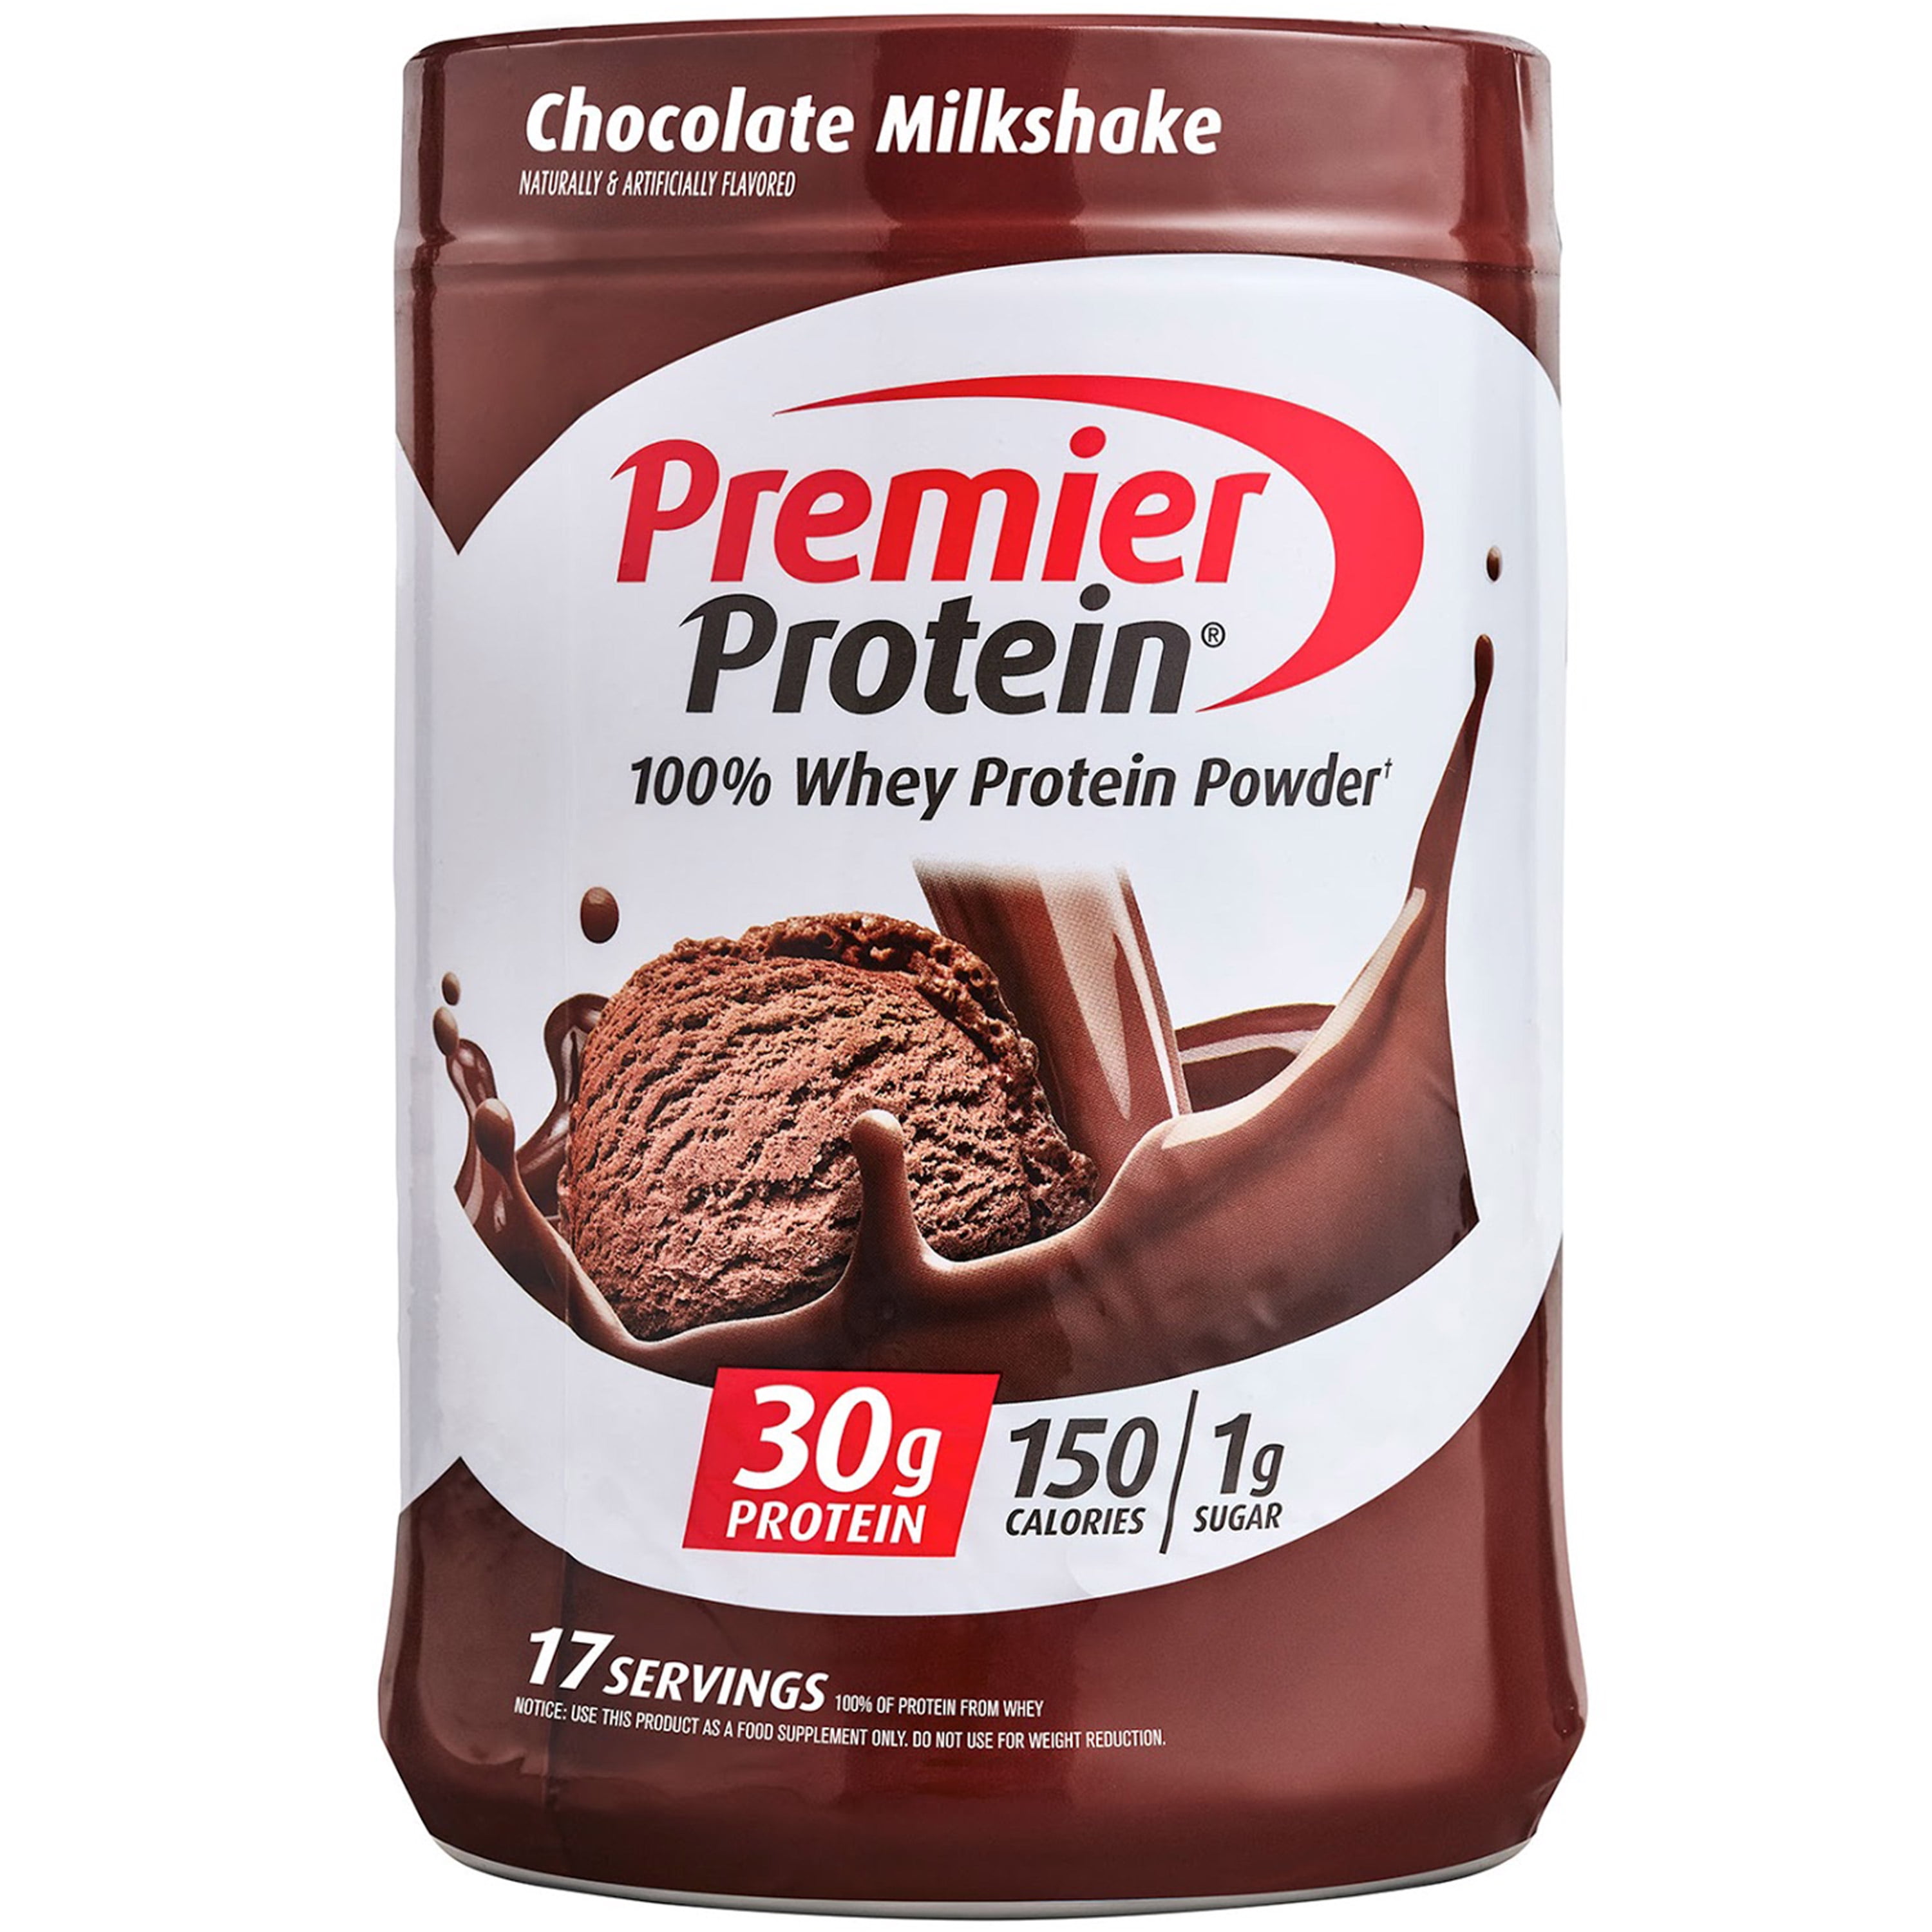 Premier Protein 100% Whey Protein Powder, Chocolate Milkshake, 30g Protein, 24.5 Oz, 1.5 Lb